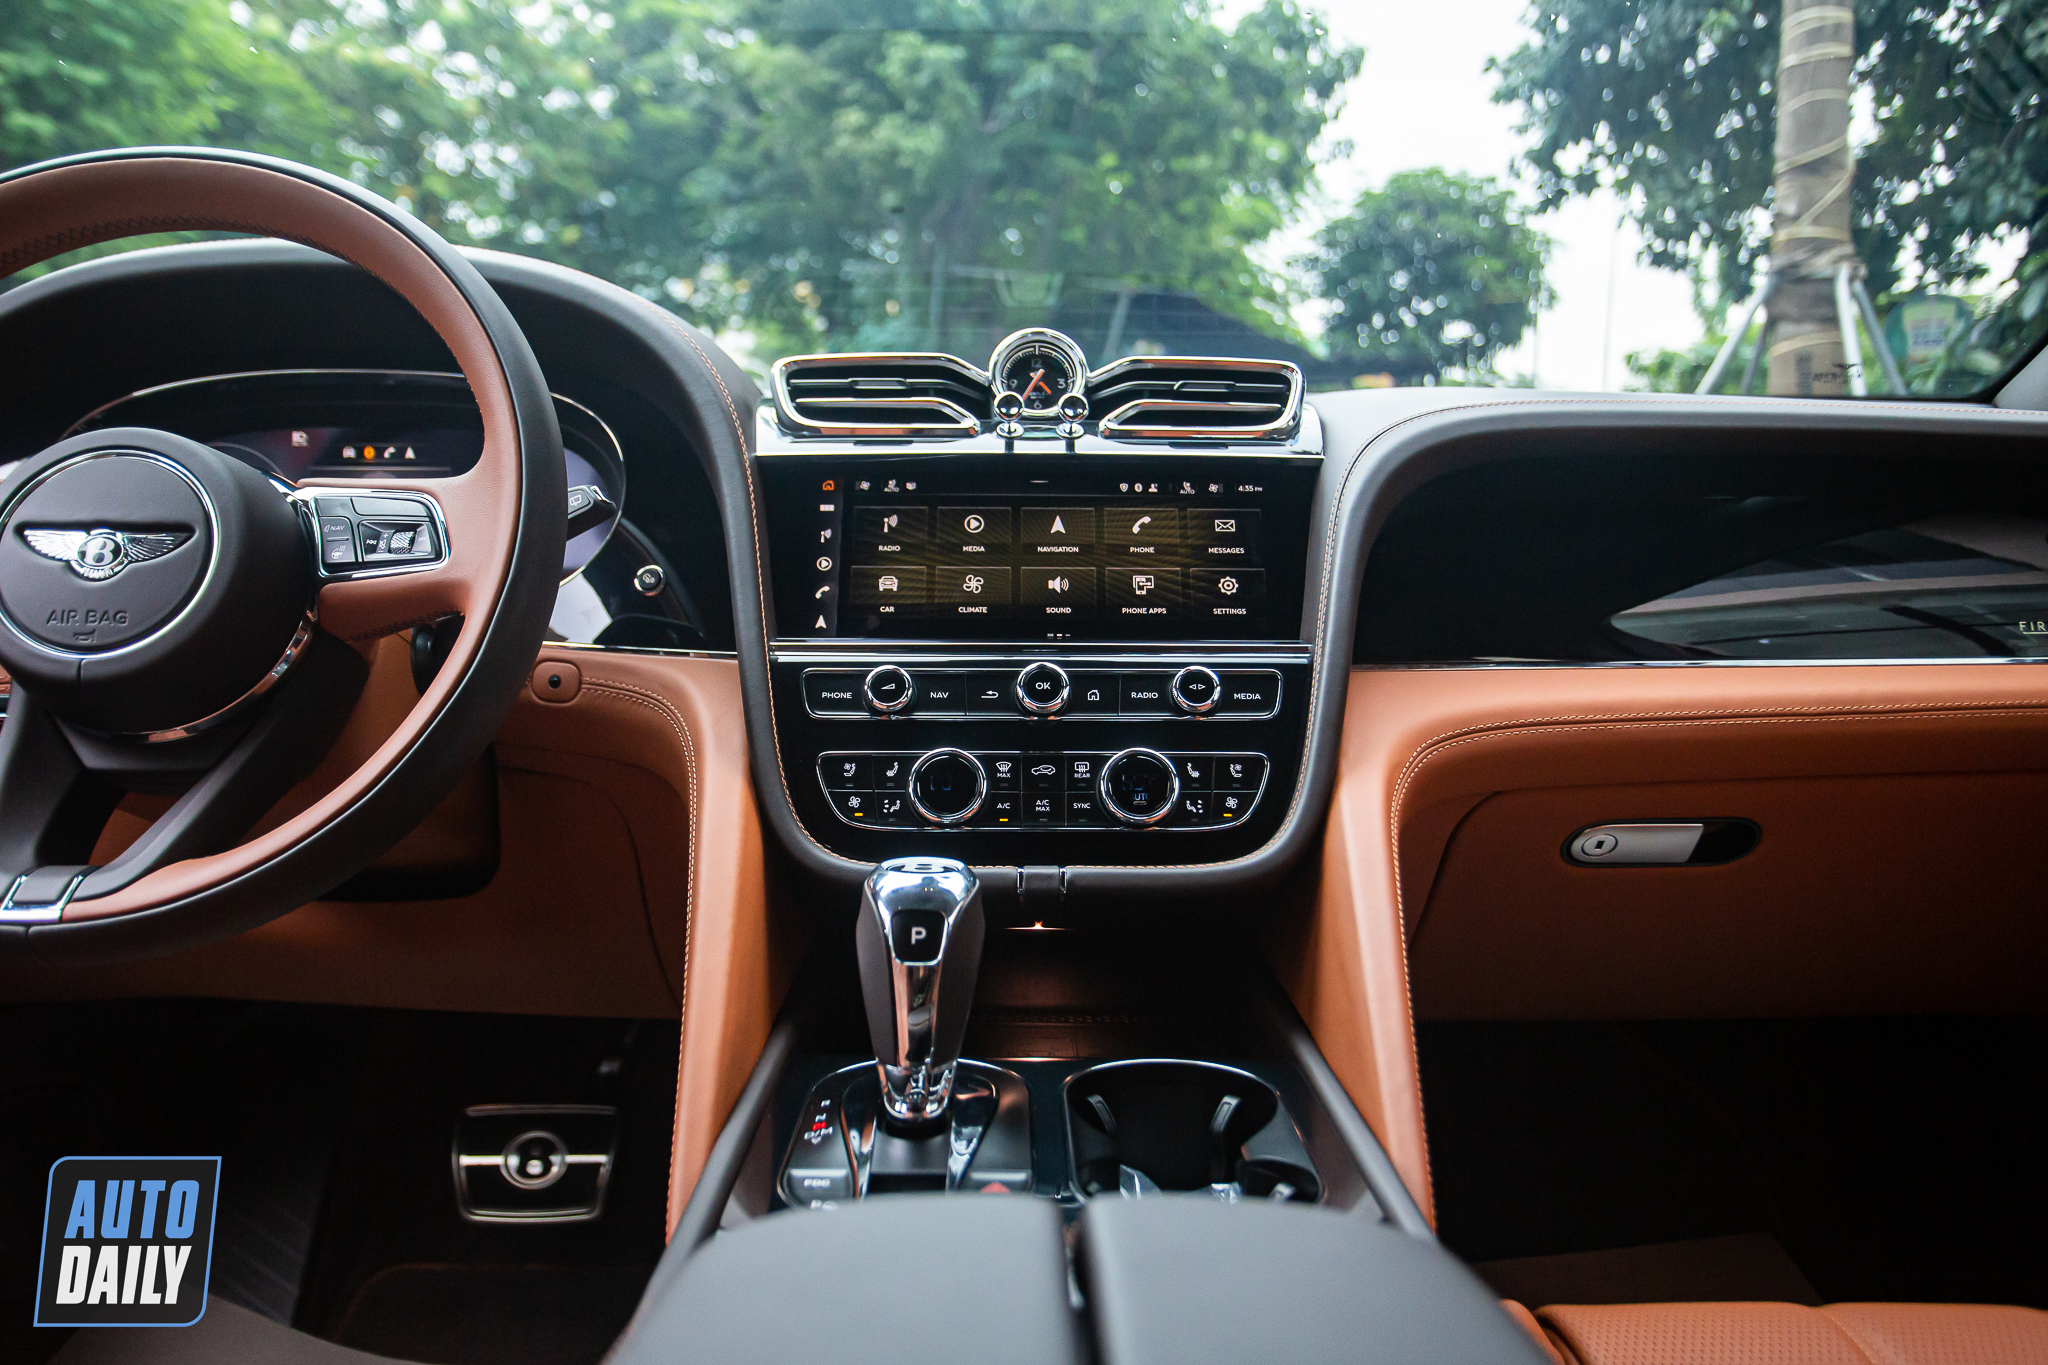 Đi 4.000 km, Bentley Bentayga màu độc nhất Việt Nam bán rẻ hơn xe mới 4,5 tỷ đồng bentley-bentayga-autodaily-13.JPG